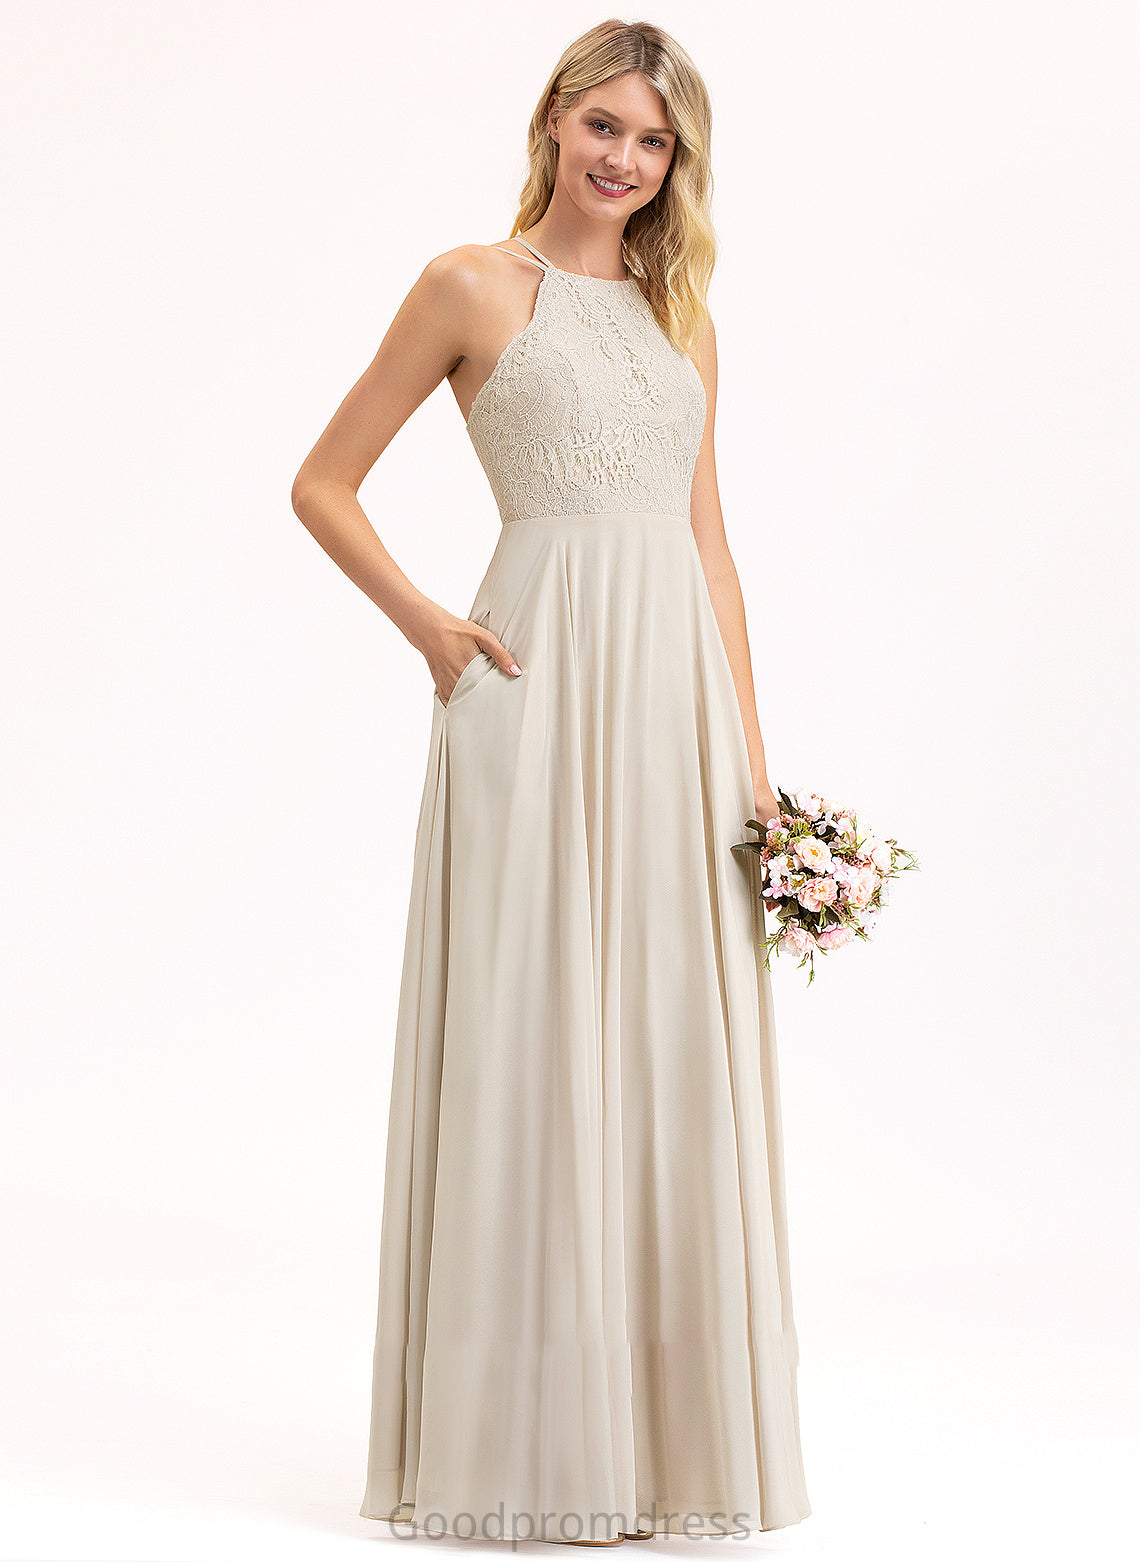 Silhouette Embellishment A-Line ScoopNeck Floor-Length Pockets Length Fabric Neckline Desiree A-Line/Princess One Shoulder Bridesmaid Dresses